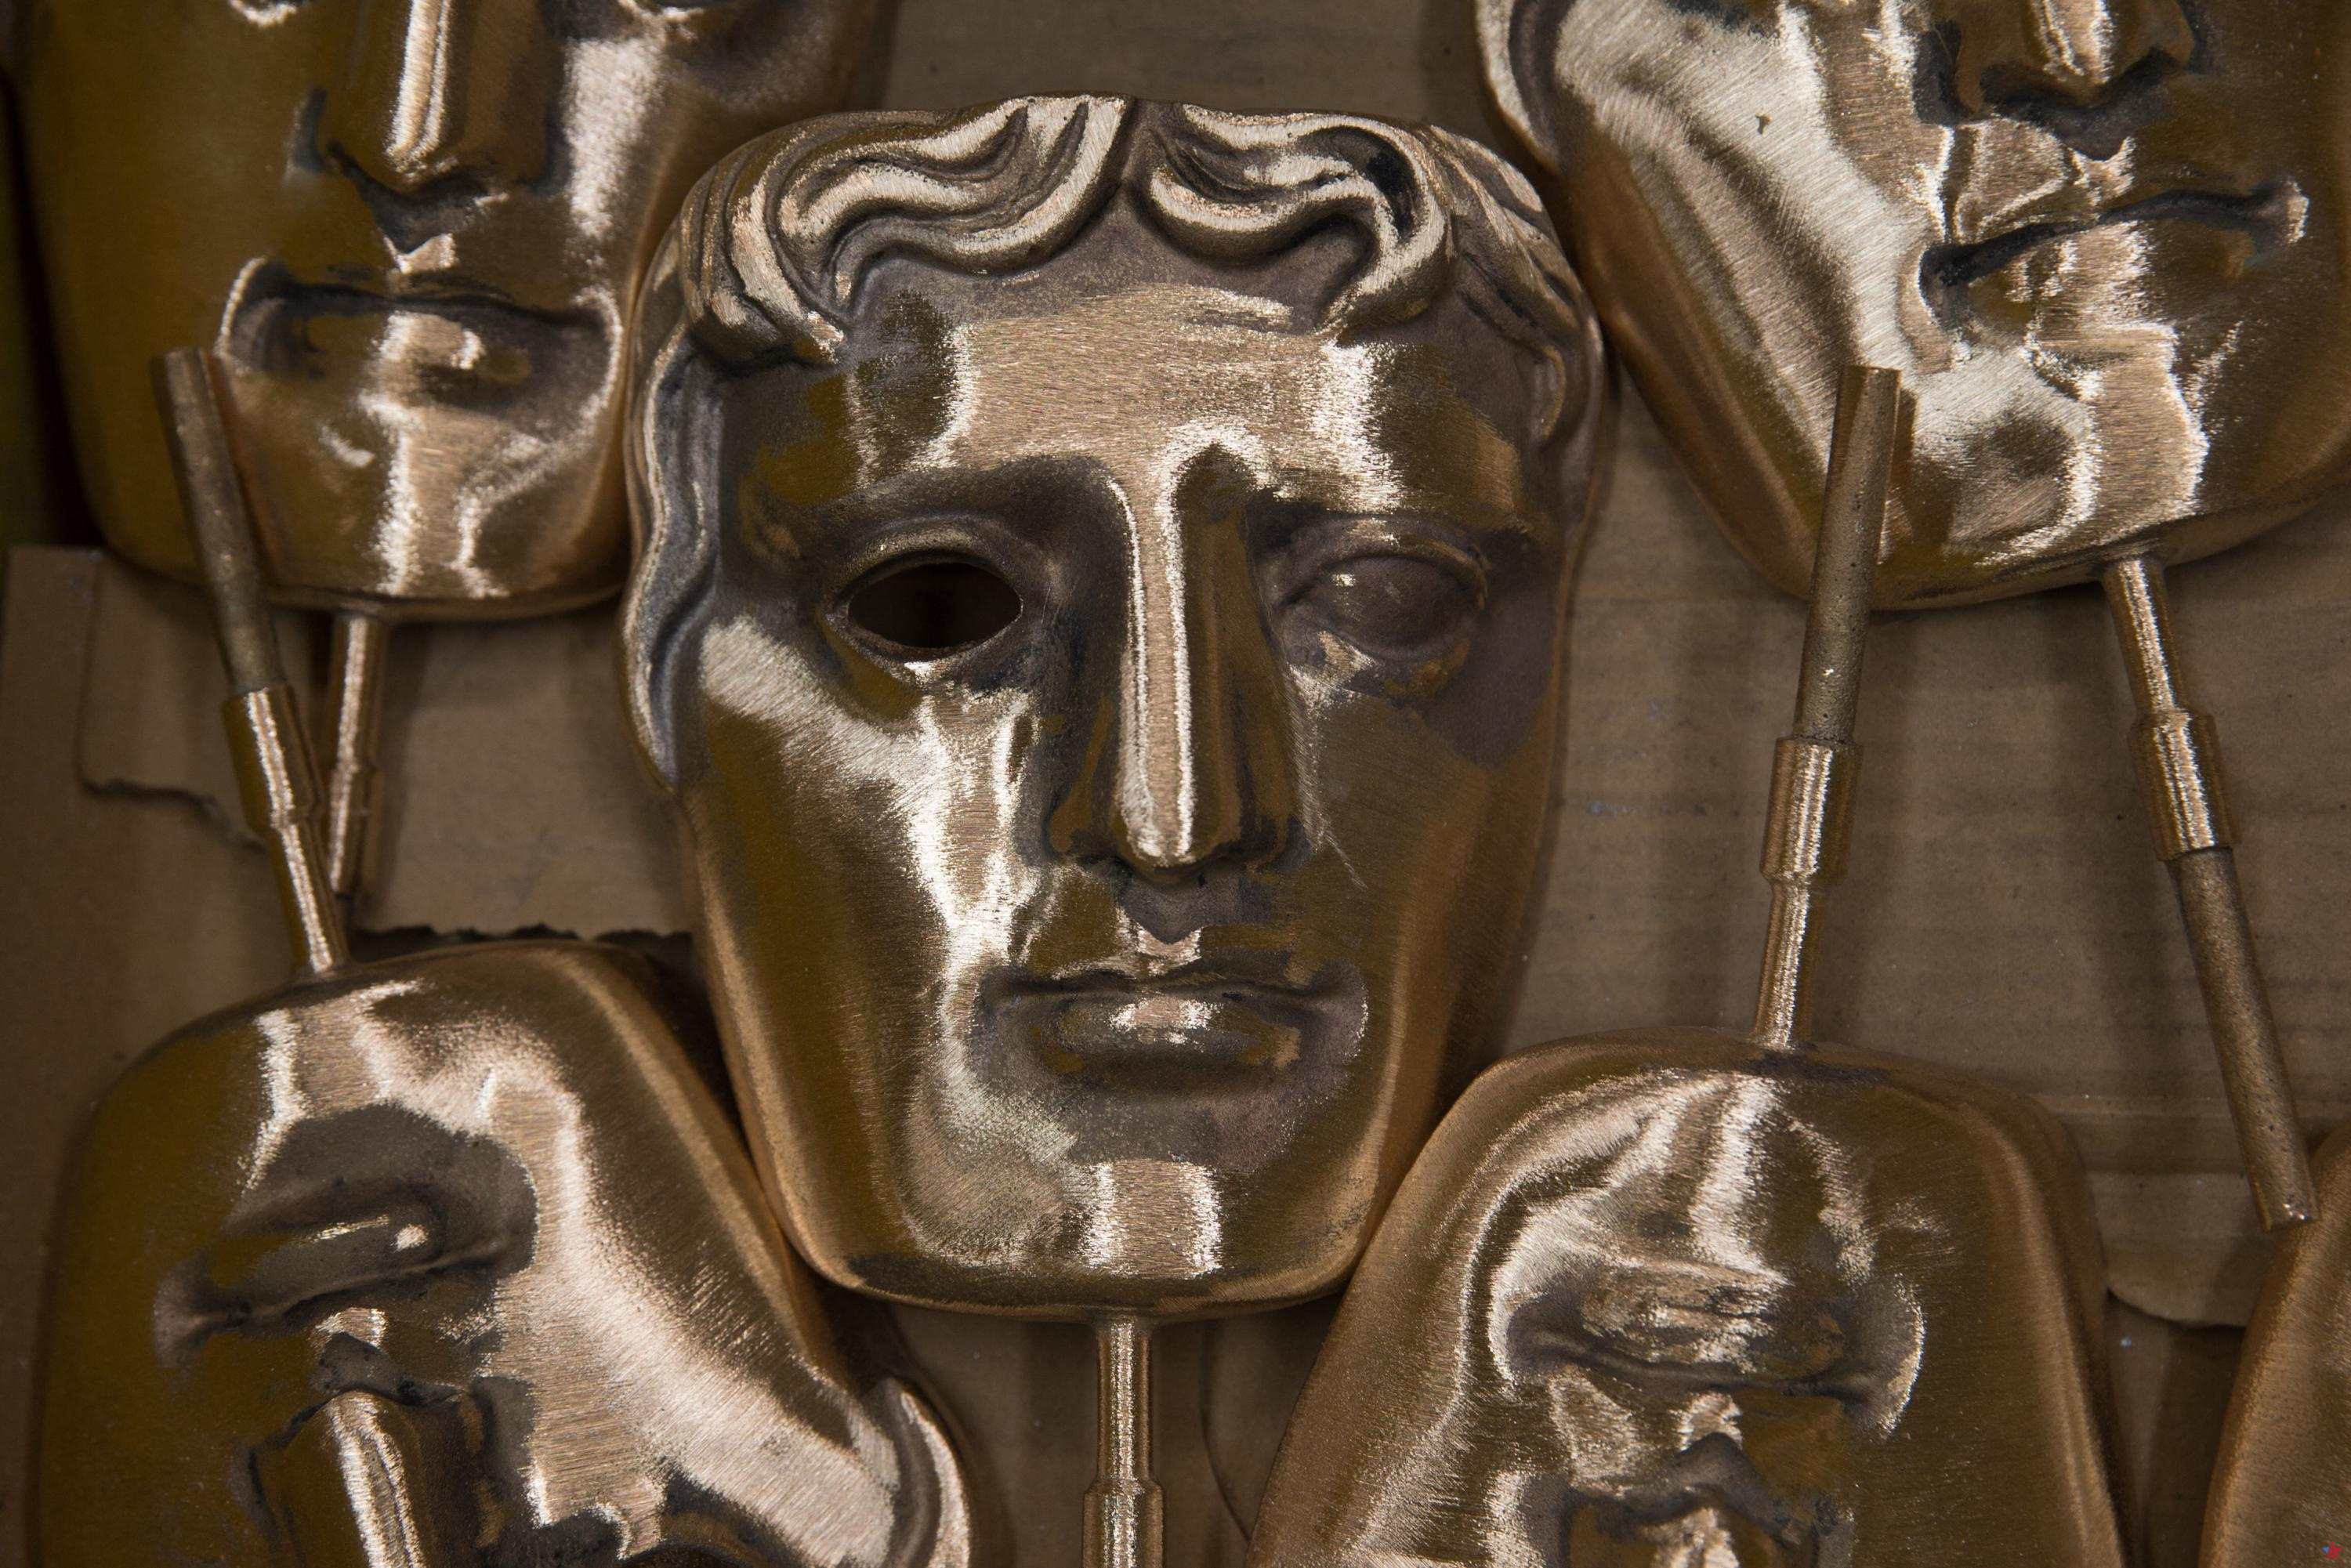 Videojuegos: Baldur's Gate 3 aplasta a sus competidores en los BAFTA